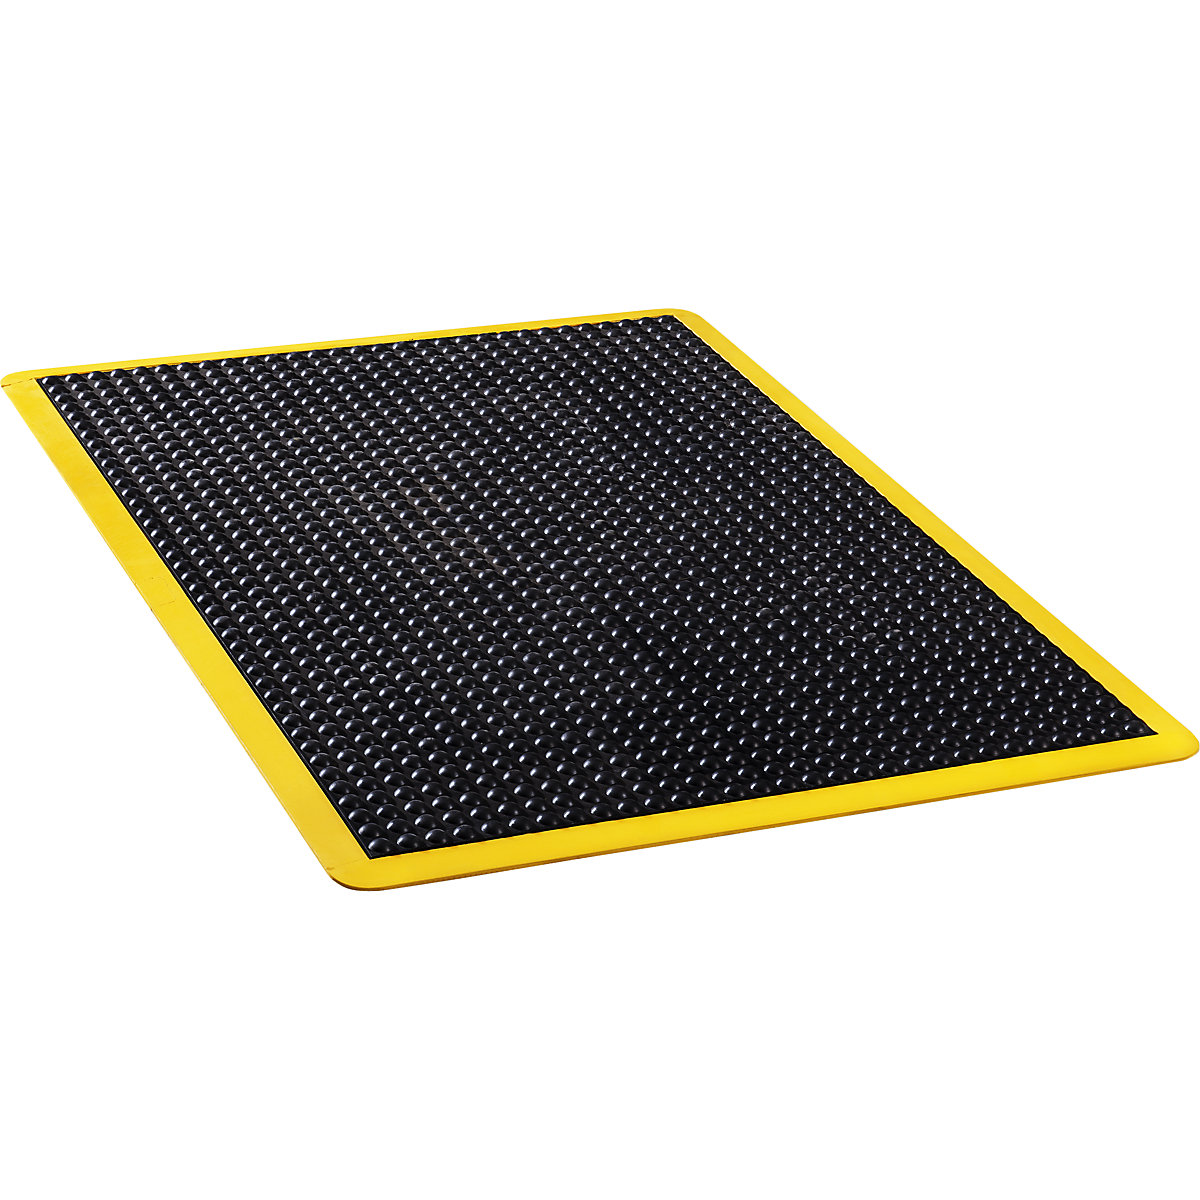 Anti-vermoeidheidsmat Bubblemat safety – COBA, l x b x h = 1200 x 900 x 14 mm, zwart/geel, individuele mat-3